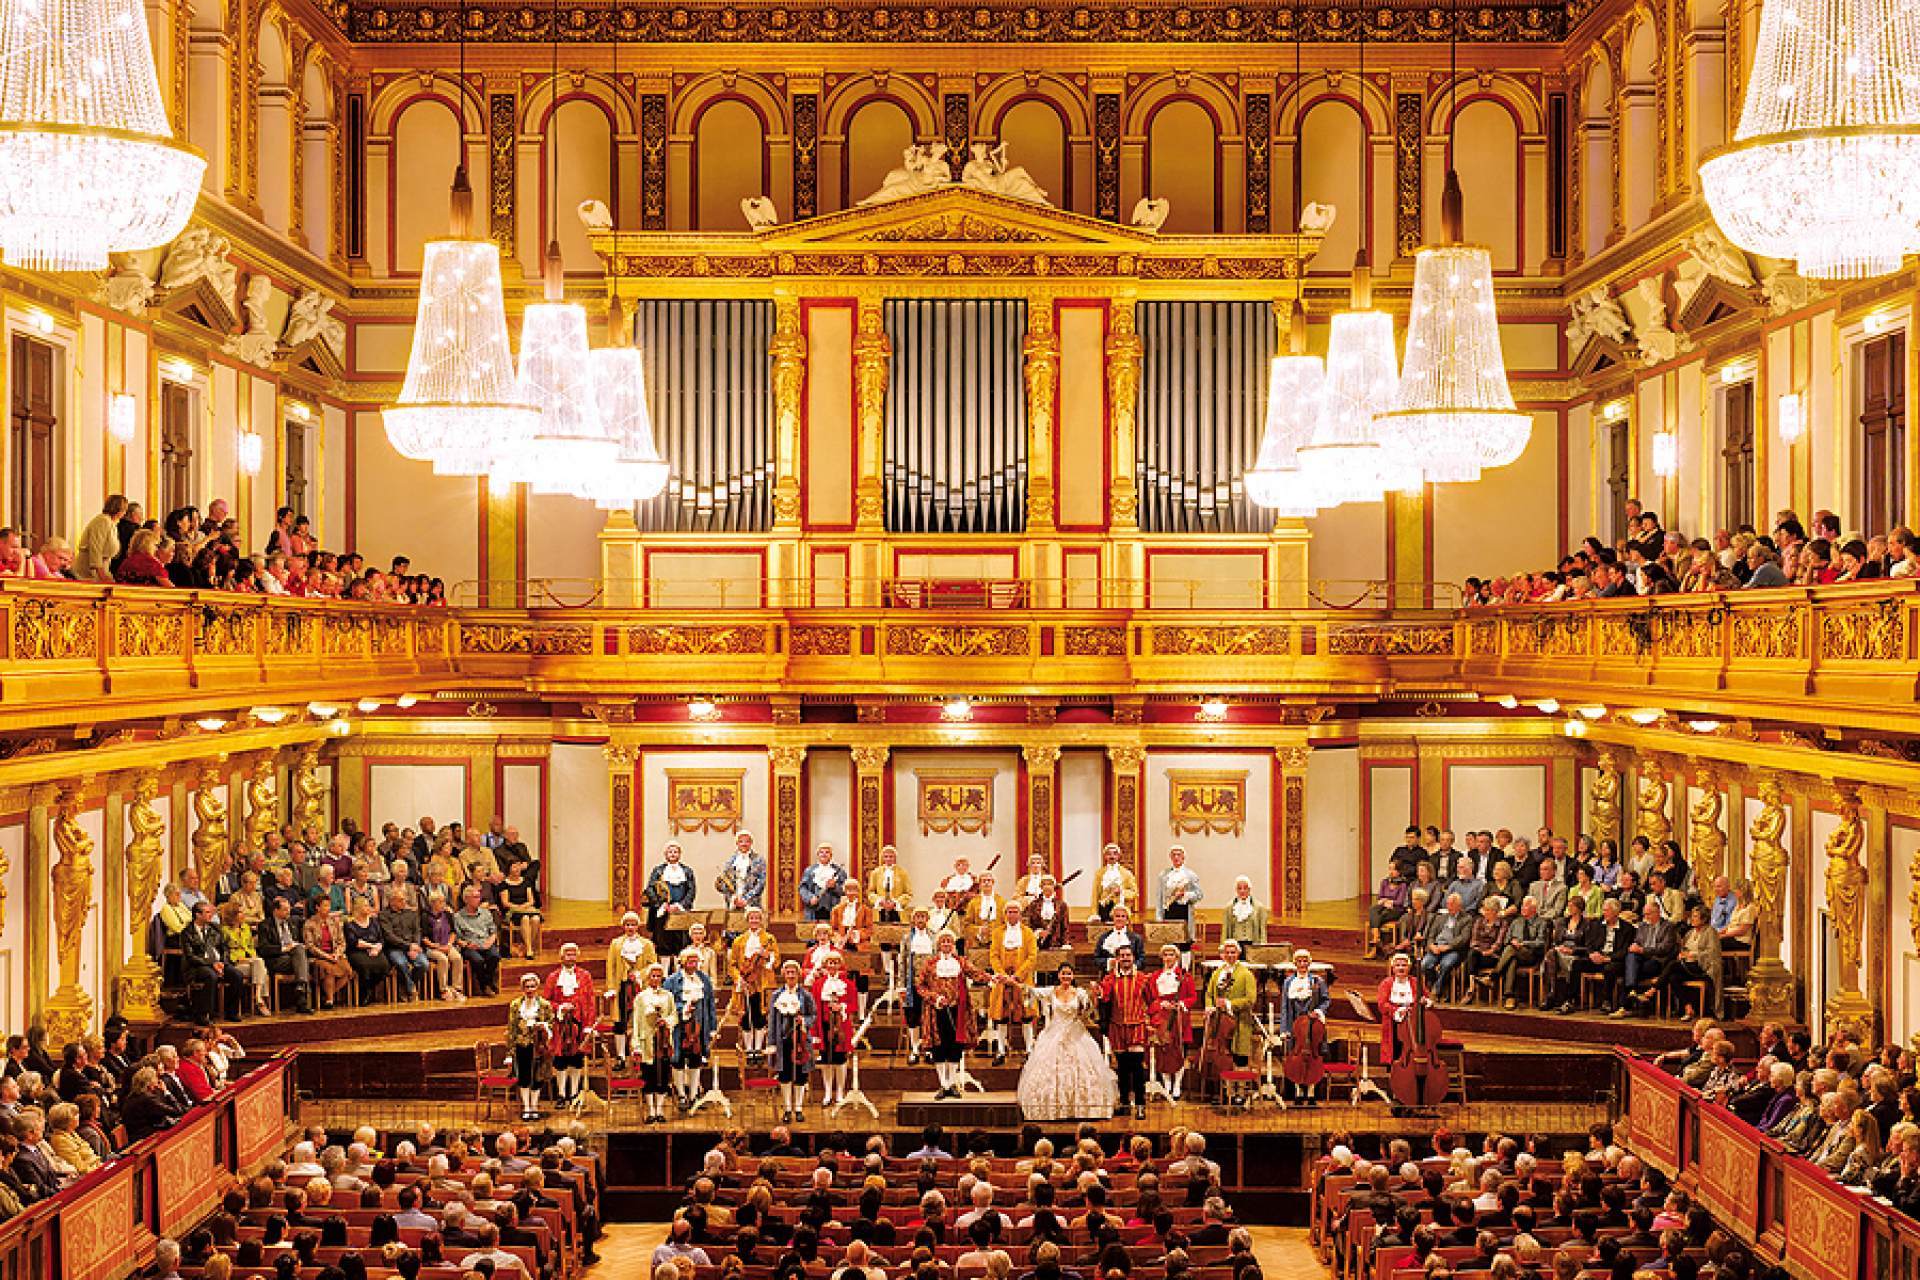 Vienna Mozart Orchestra at Vienna State Opera